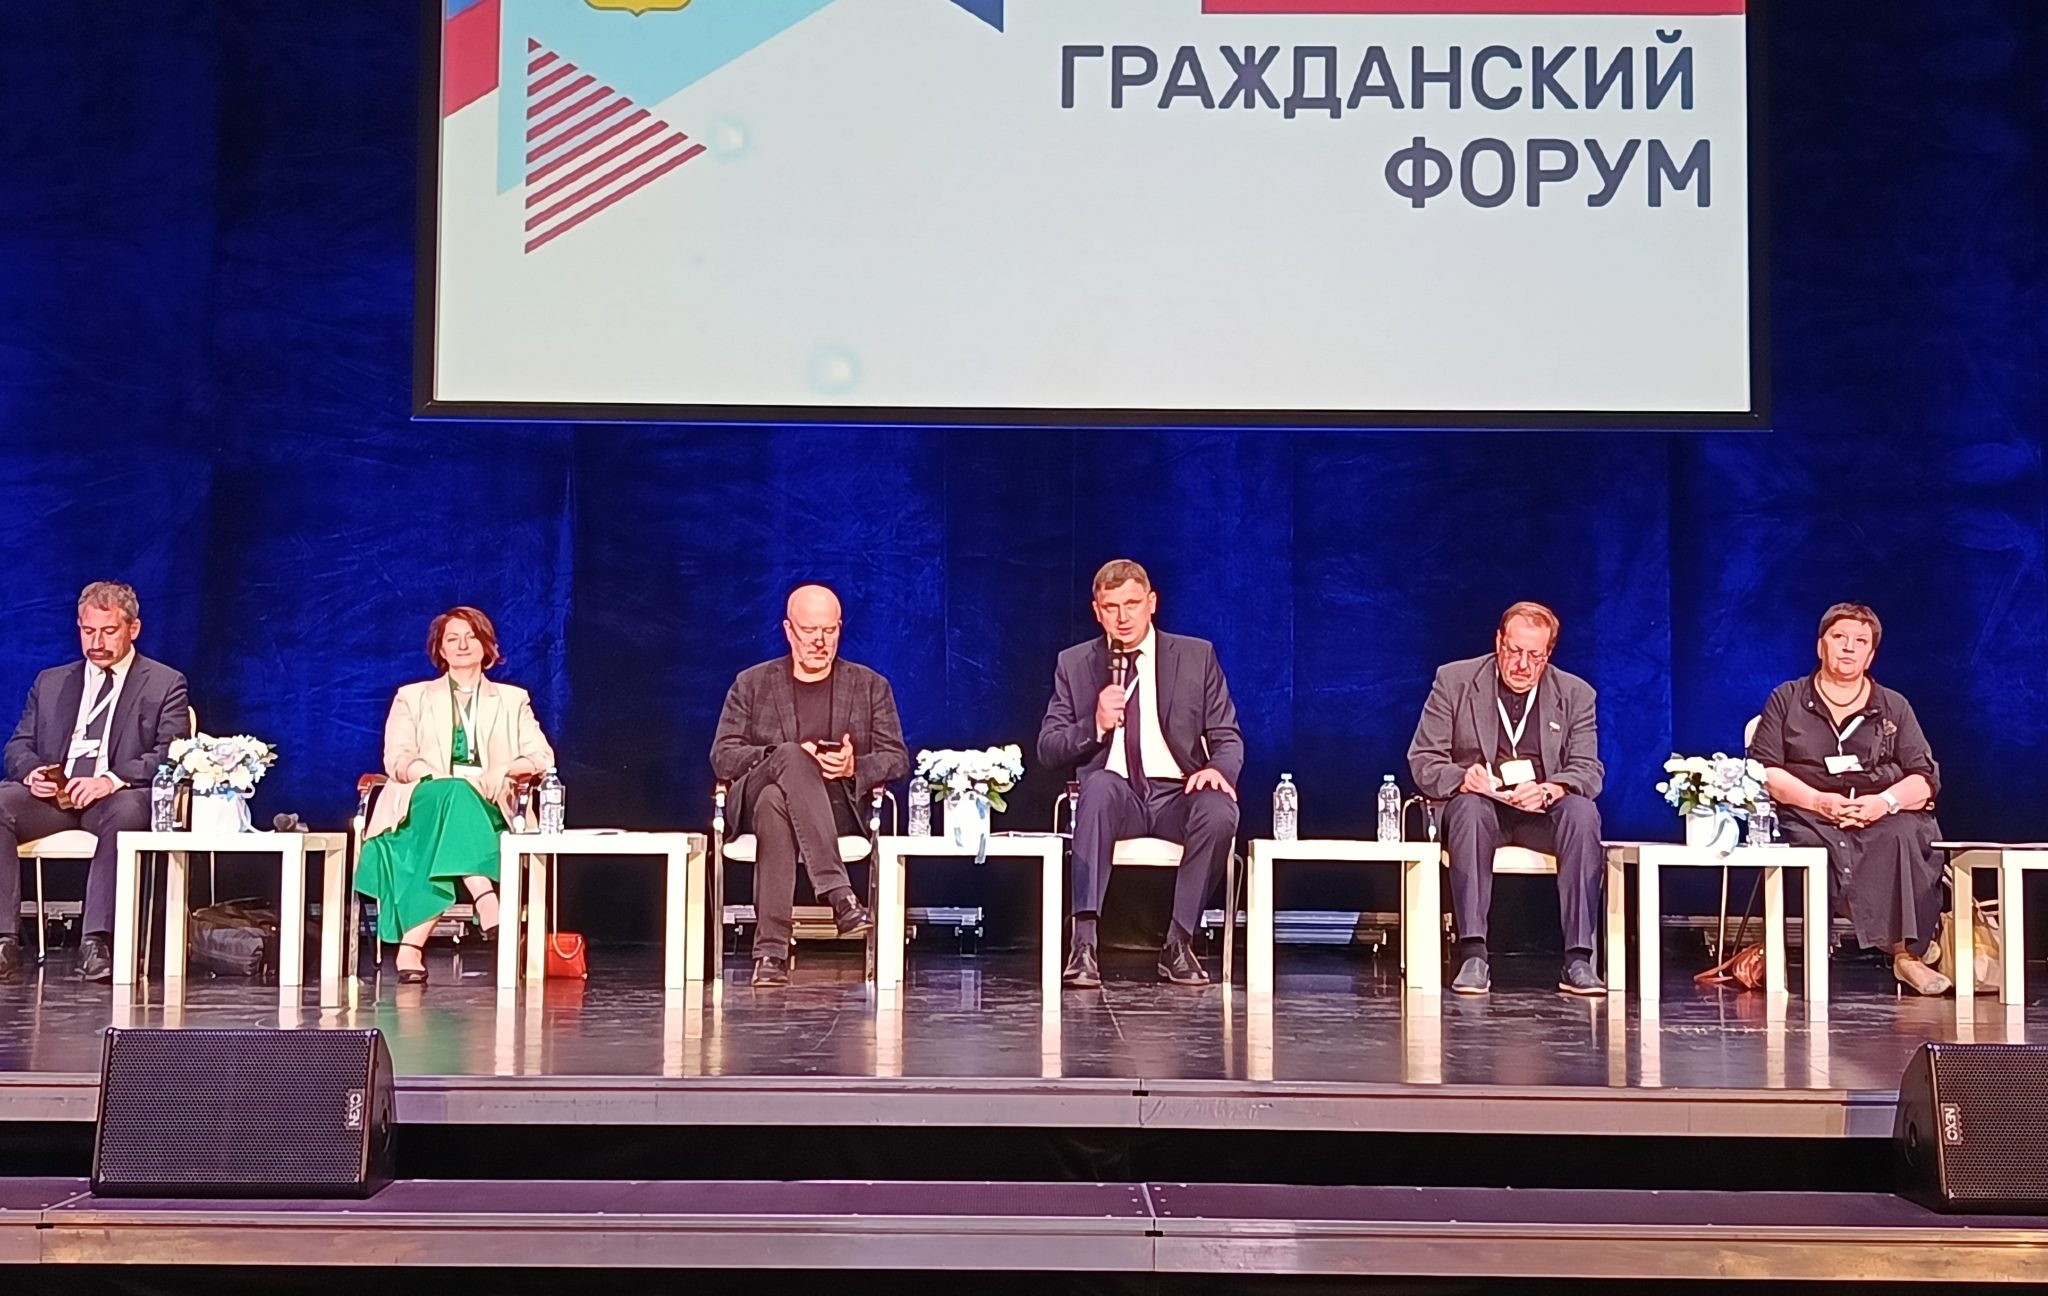 Тему трудовых отношений подняли на гражданском форуме в Ярославле